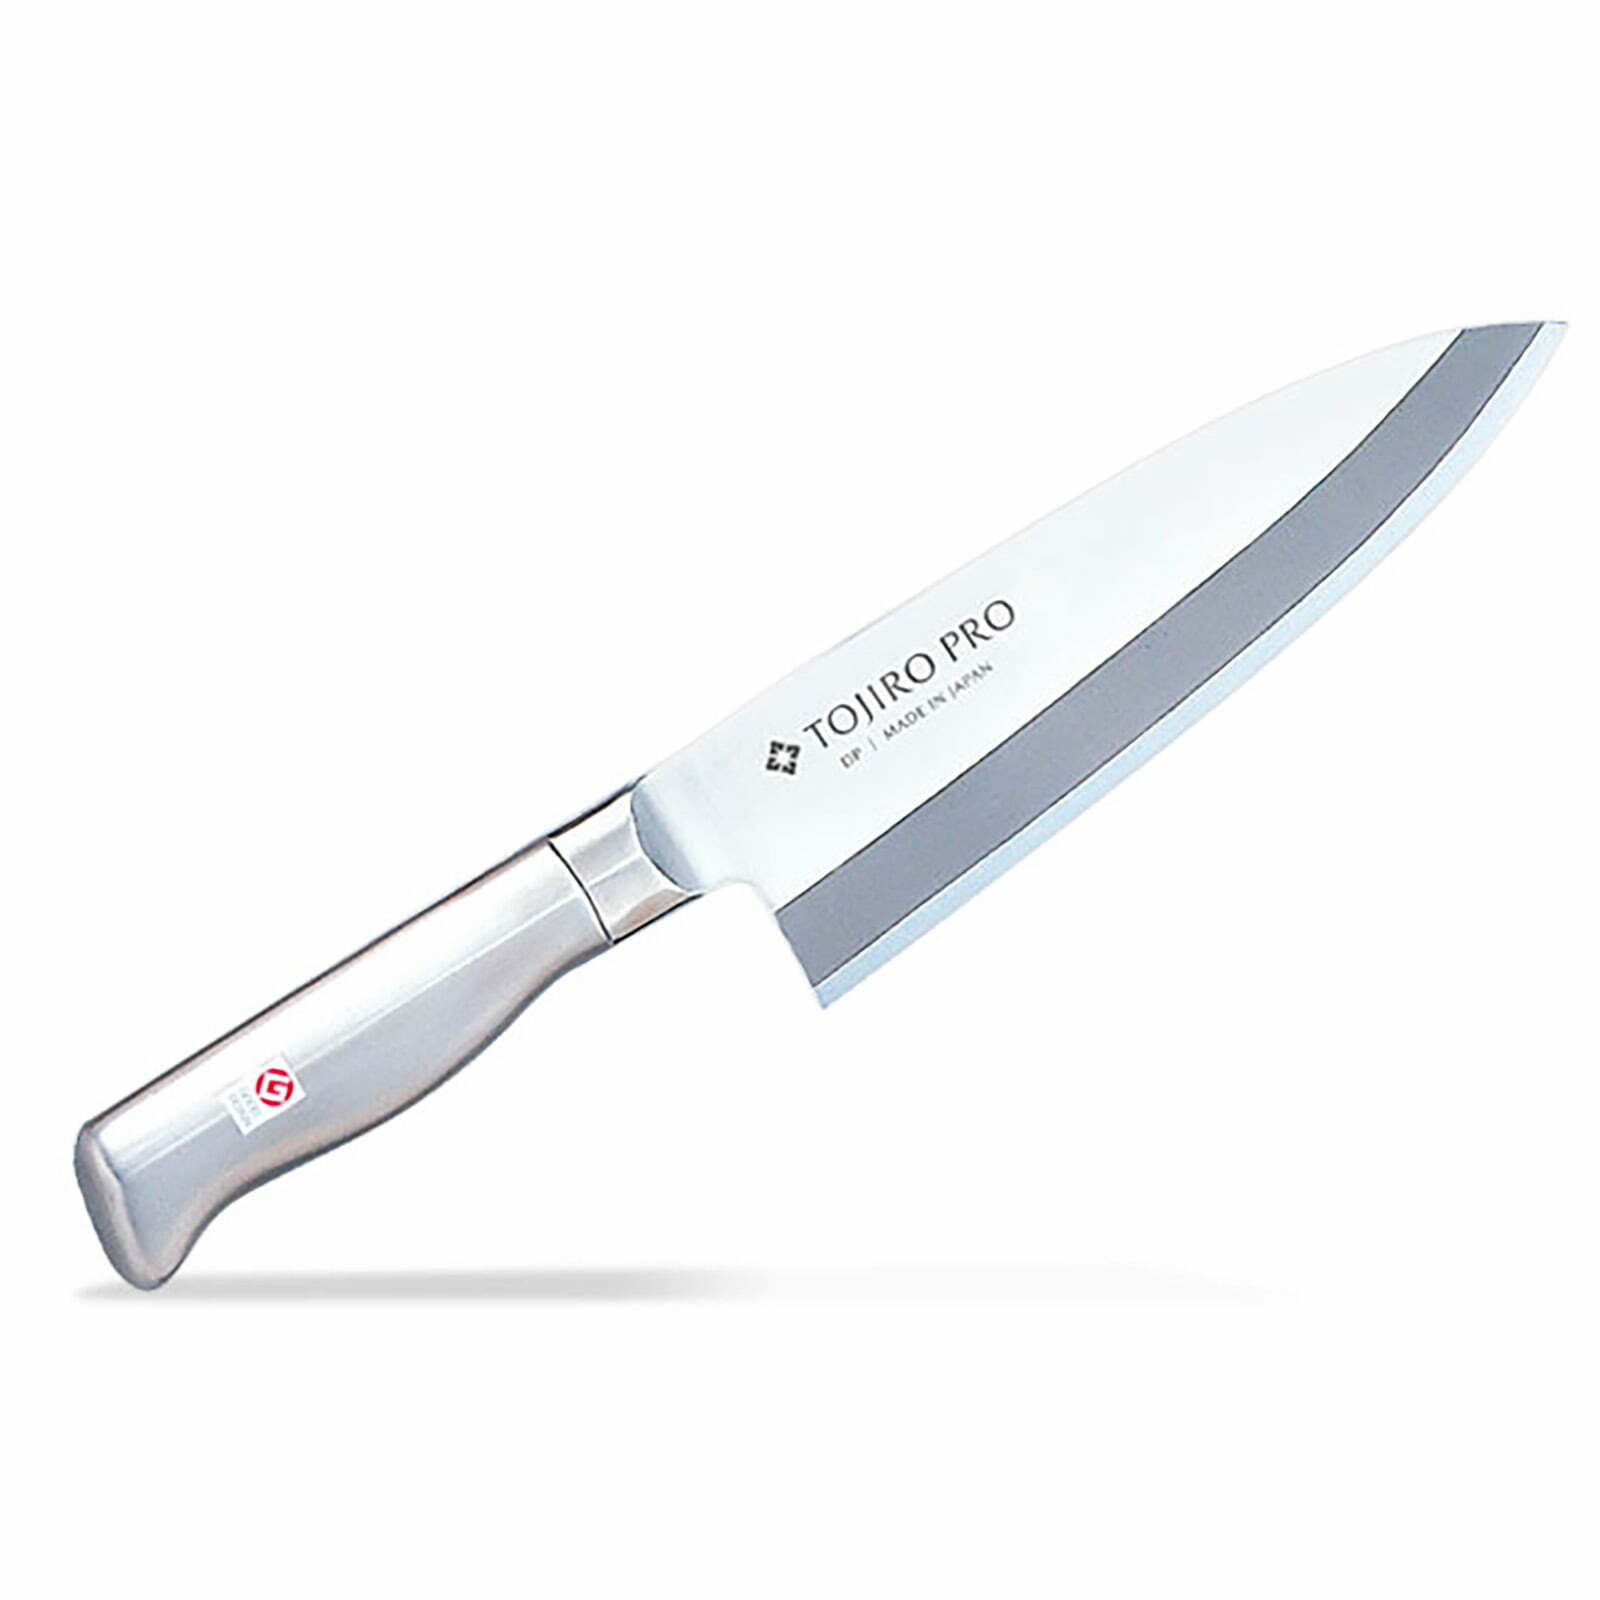 סכין פילוט דגים דבה 150 מ״מ מחוזקת 2 שכבות: פלדת פחמן יפנית VG-10 עטופה פלדת אל-חלד SKTOJIF63511